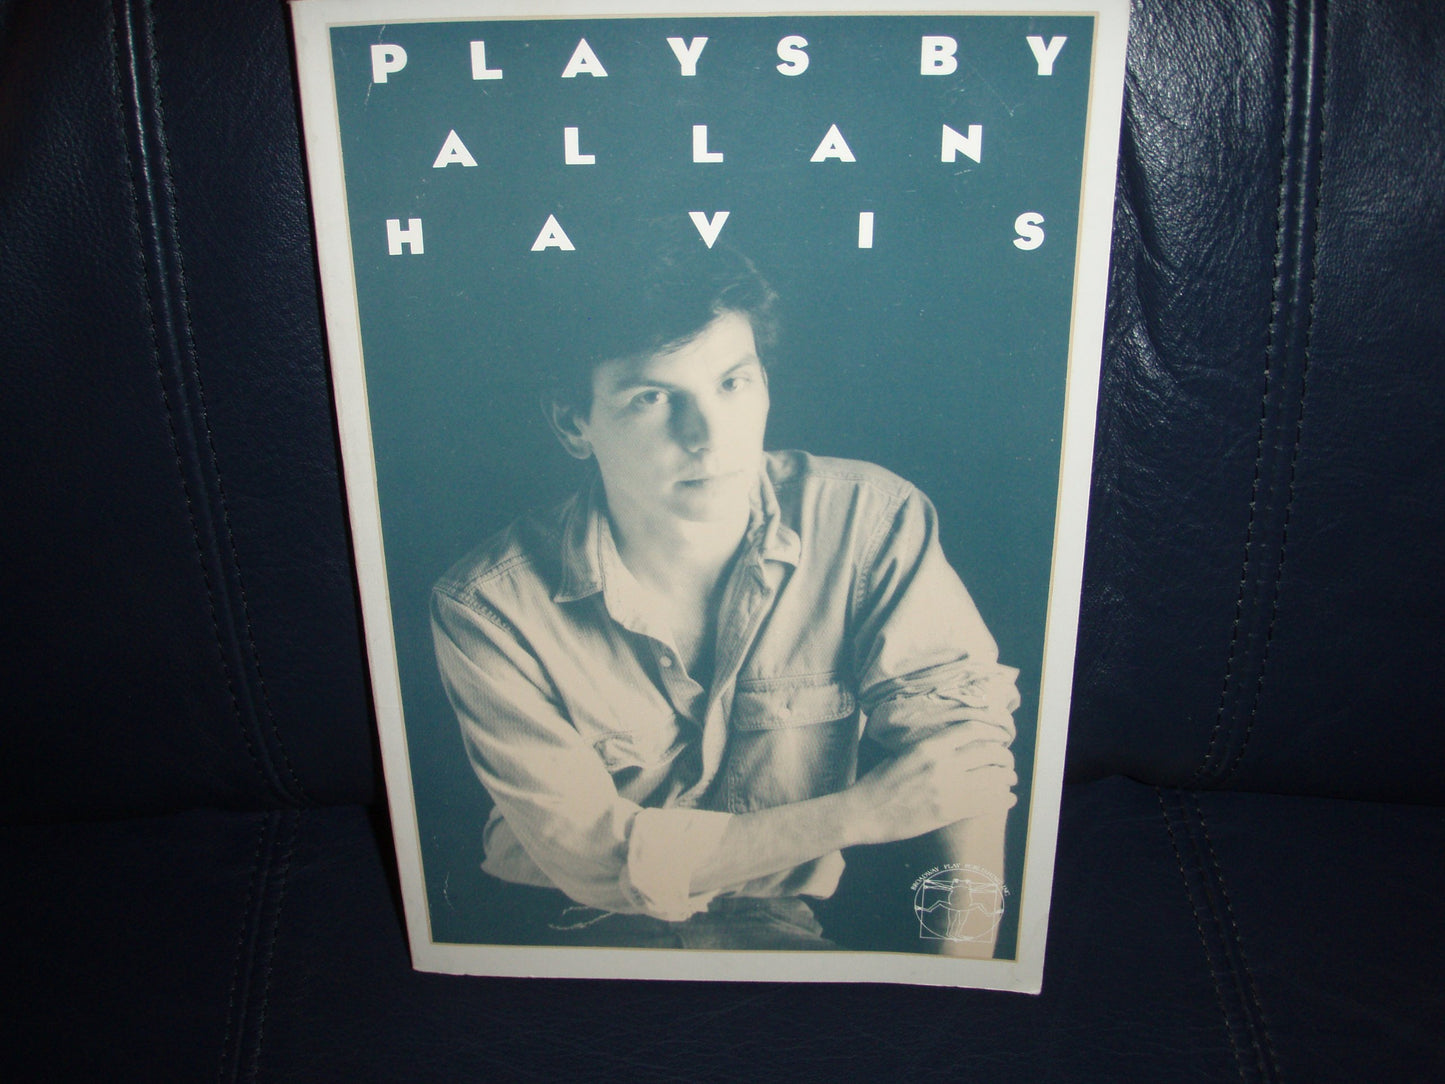 Plays by Allan Havis